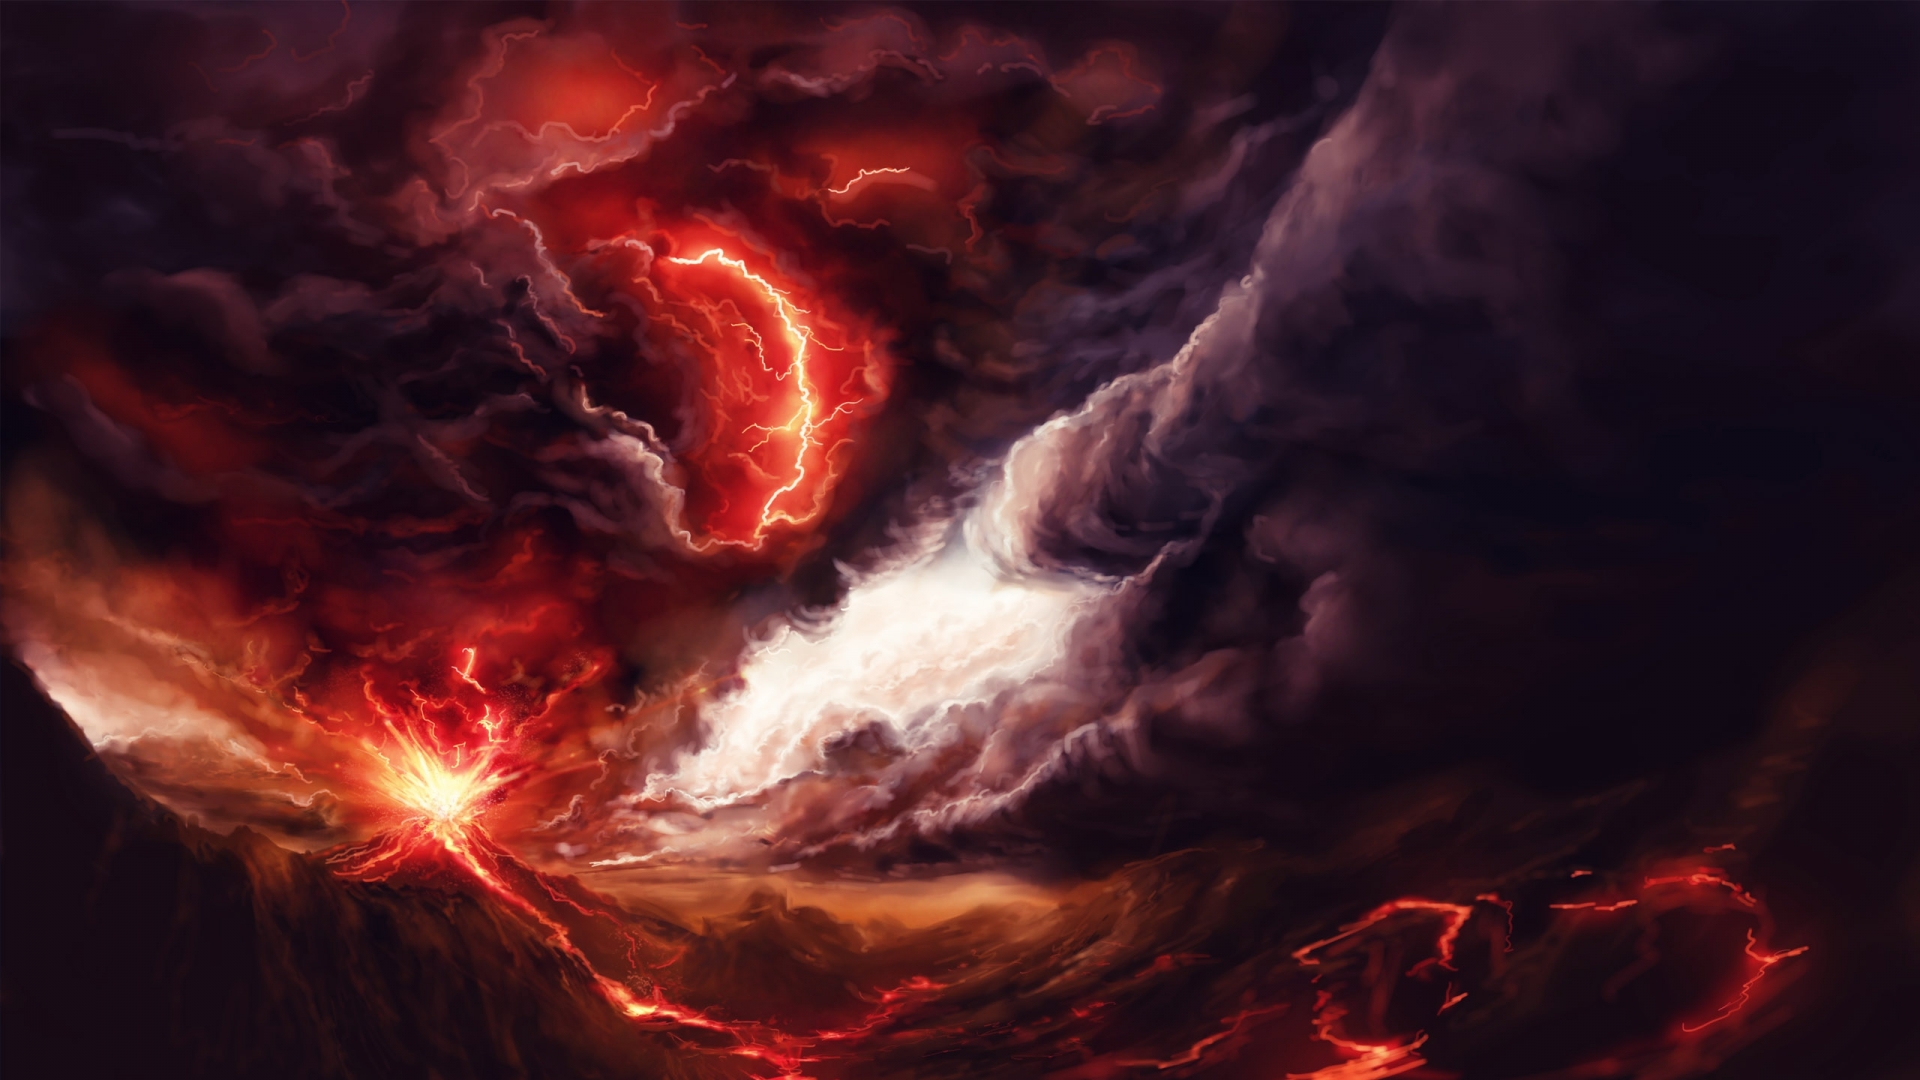 Lightning Storm Images Download Free | PixelsTalk.Net